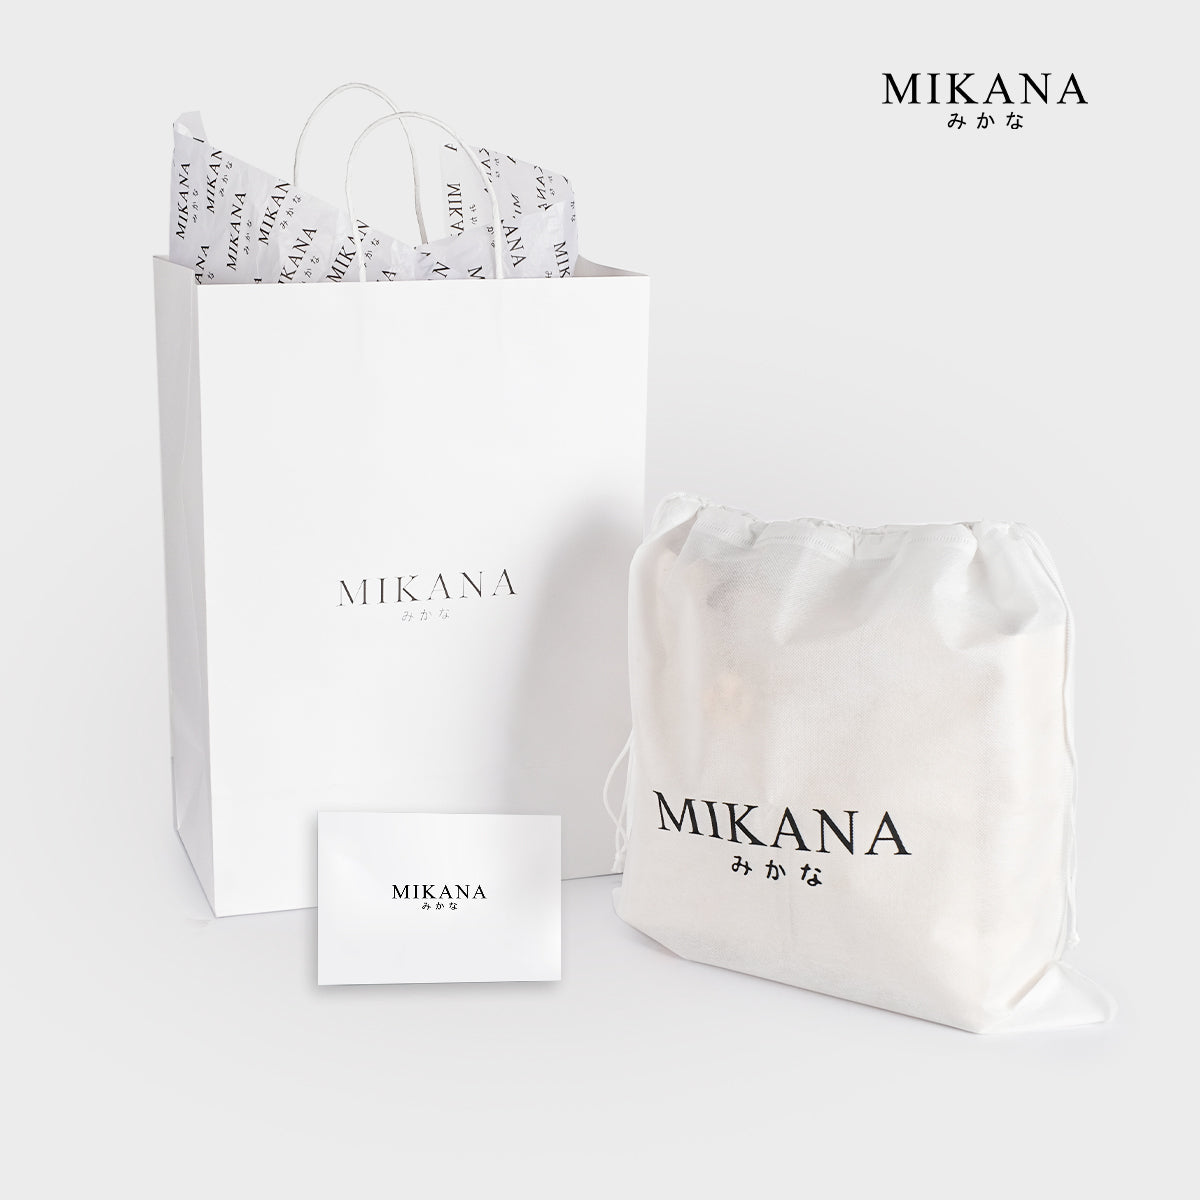 Mikana Imada Sling Bag for Woman